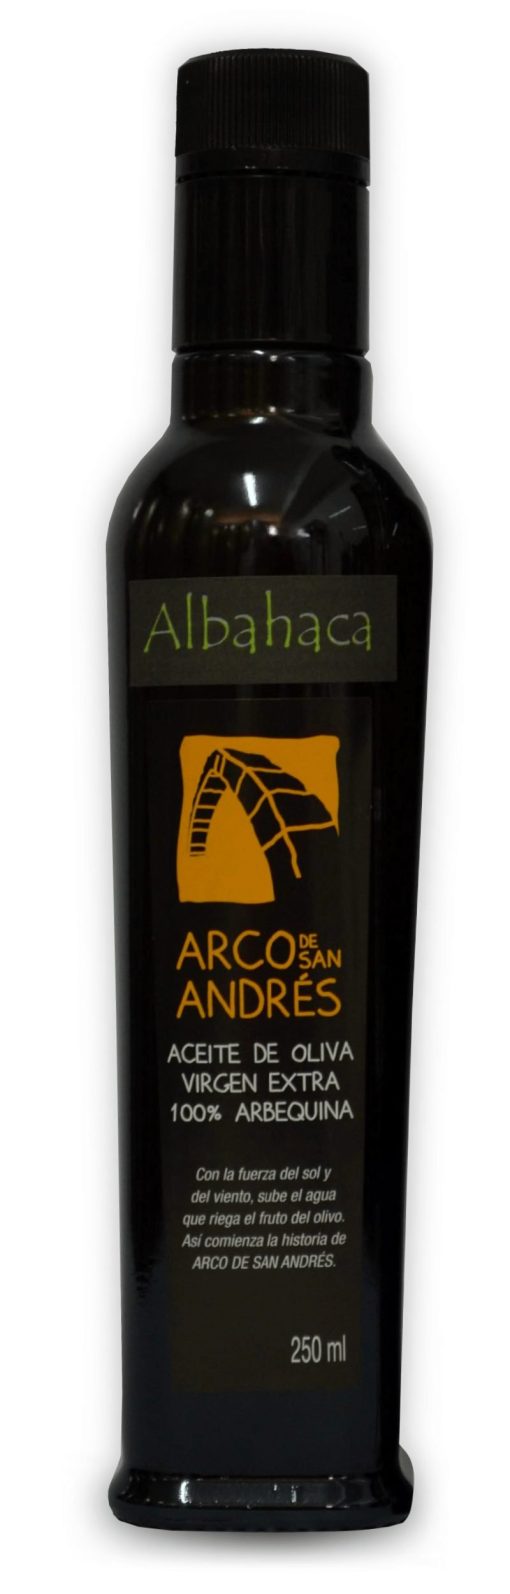 ArcoDeSanAndres AOVE Arbequino Albahaca Botella 250ml LU 001 1675354209